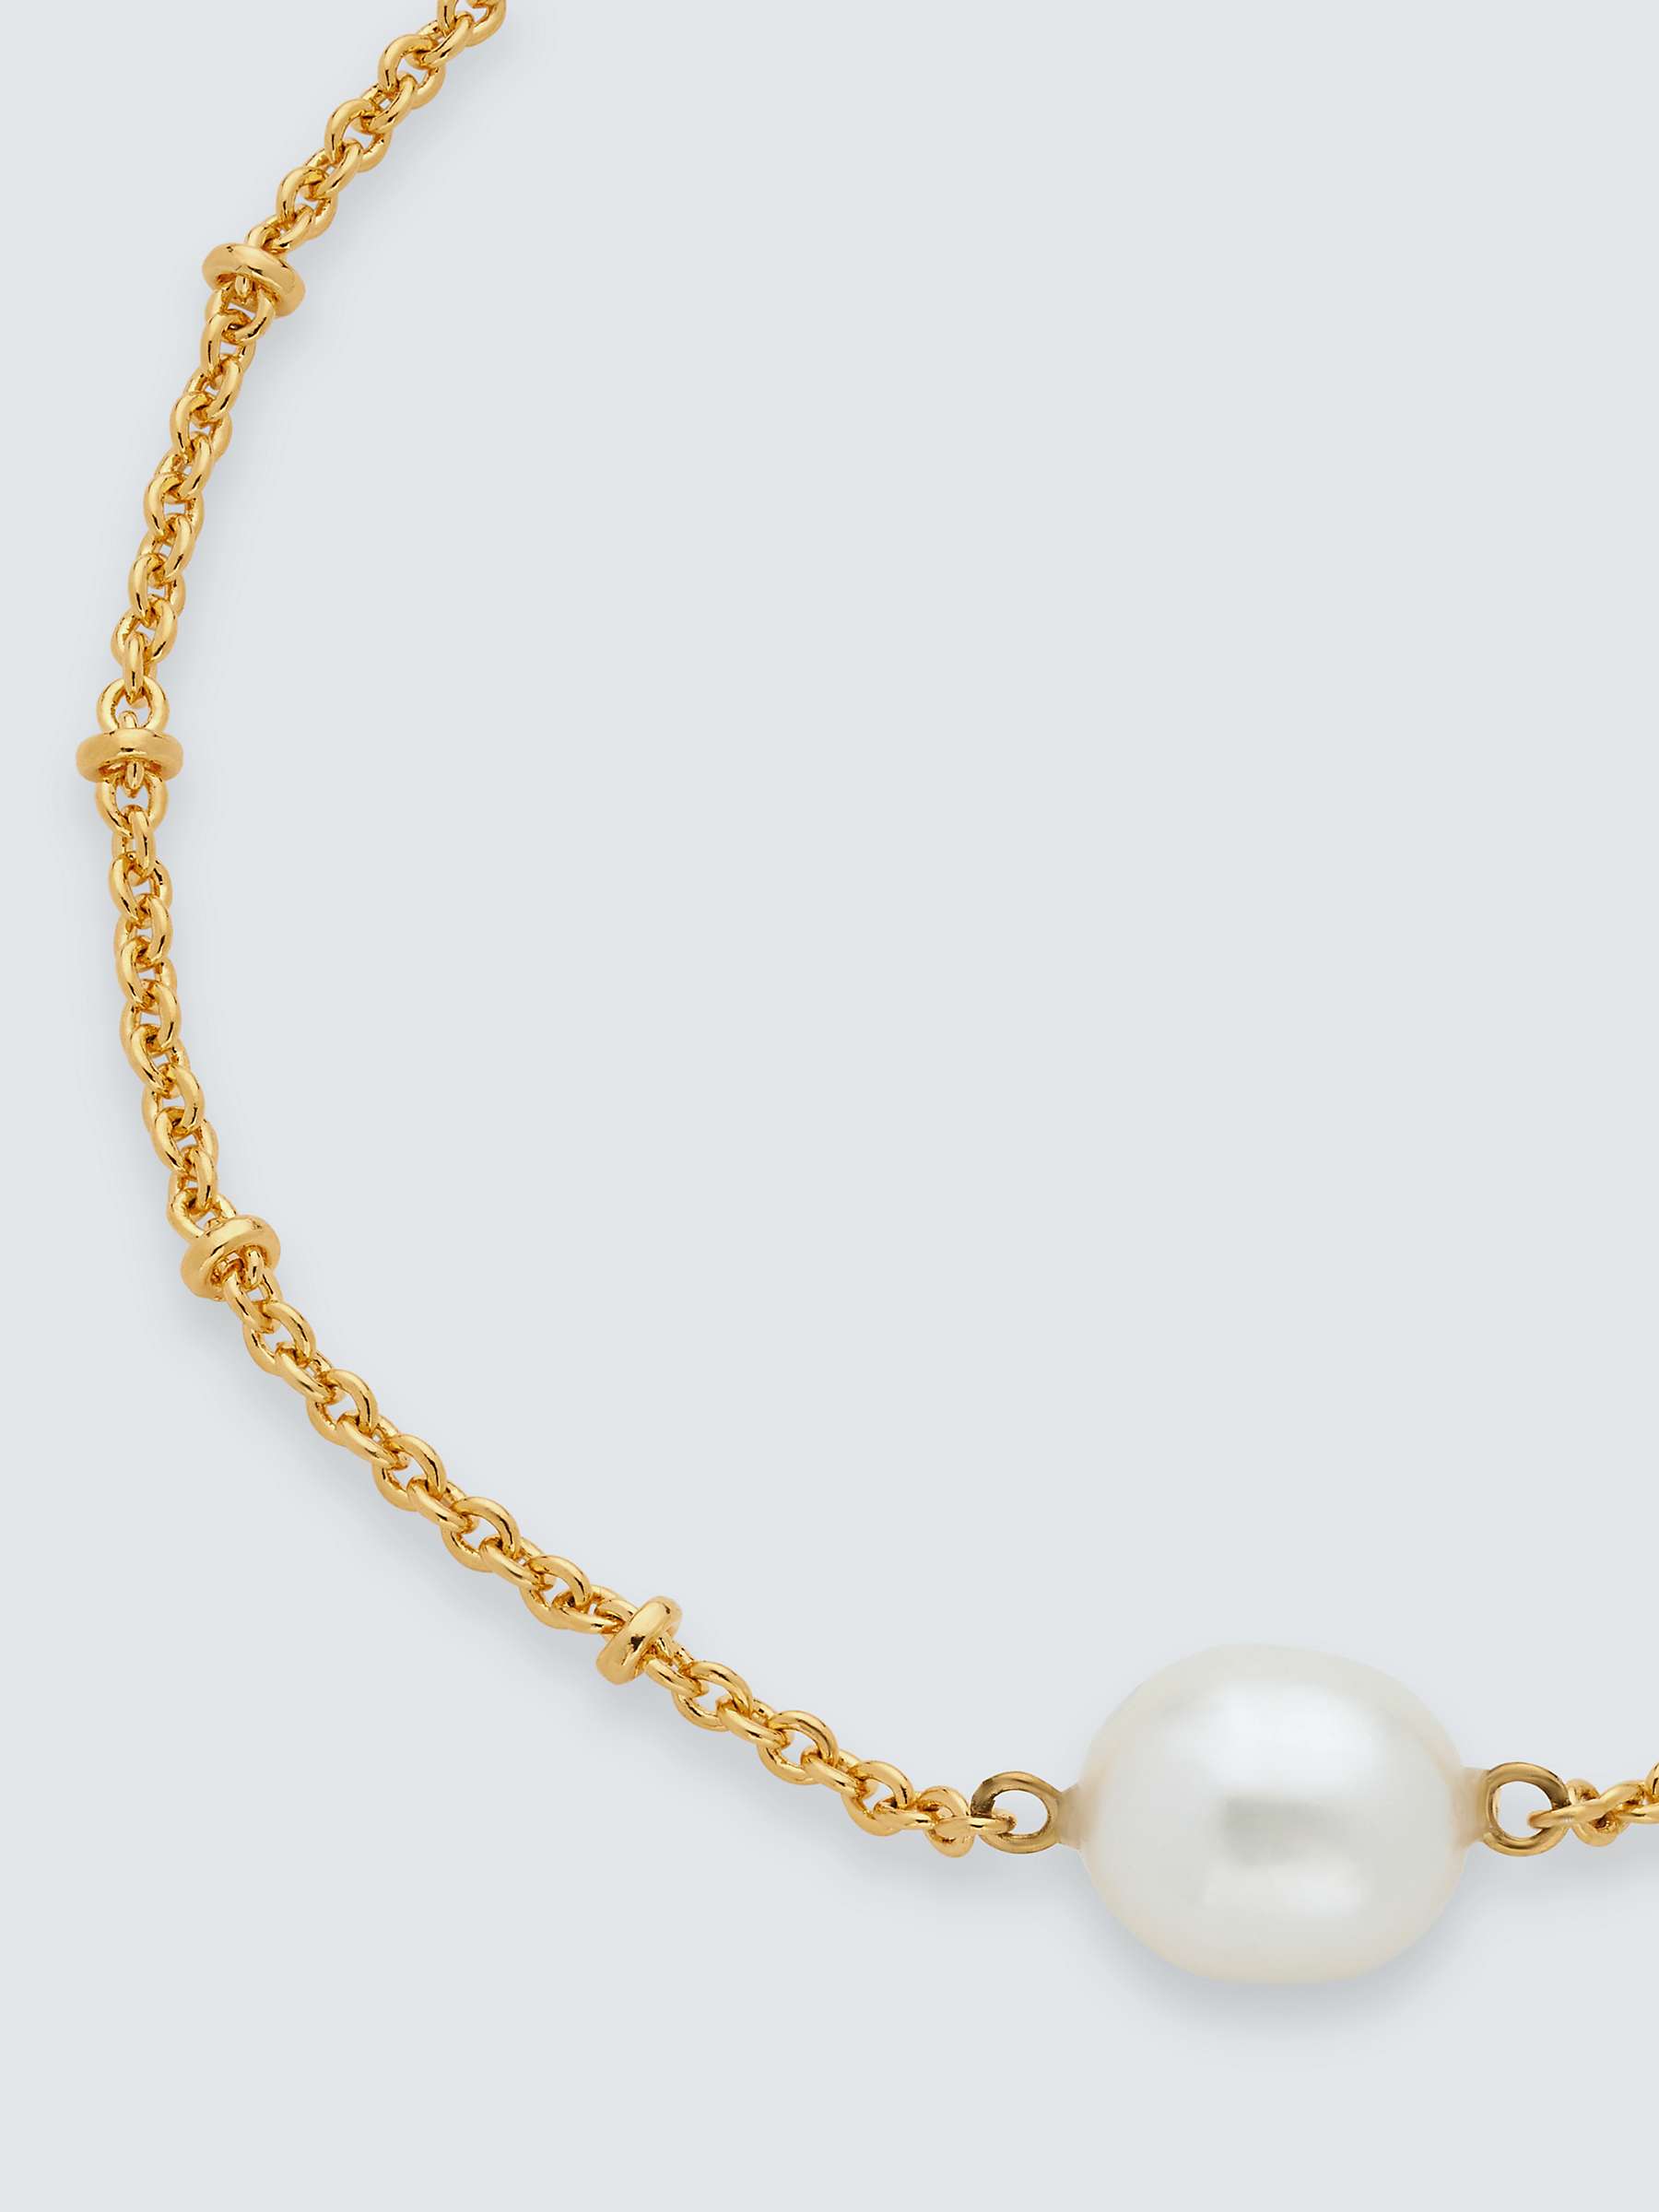 Buy John Lewis Gemstones & Pearls Baroque Pearl Bracelet Online at johnlewis.com